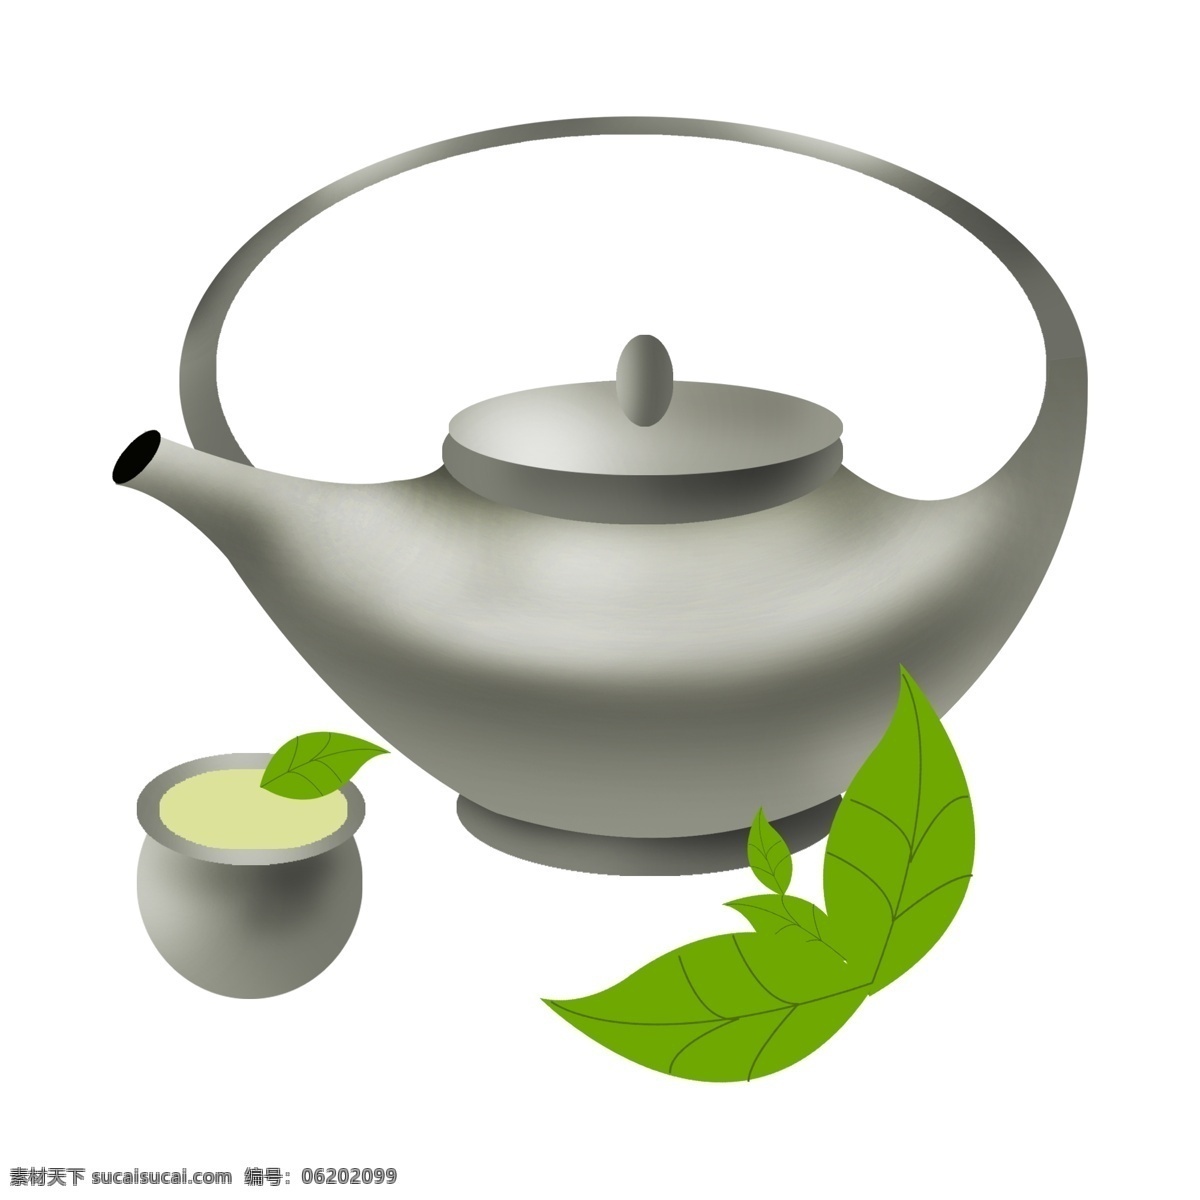 创意 茶壶 茶杯 插画 创意的茶壶 灰色茶壶茶杯 饮茶茶水 喝茶 茶叶冲茶泡茶 健康养生 绿色茶叶